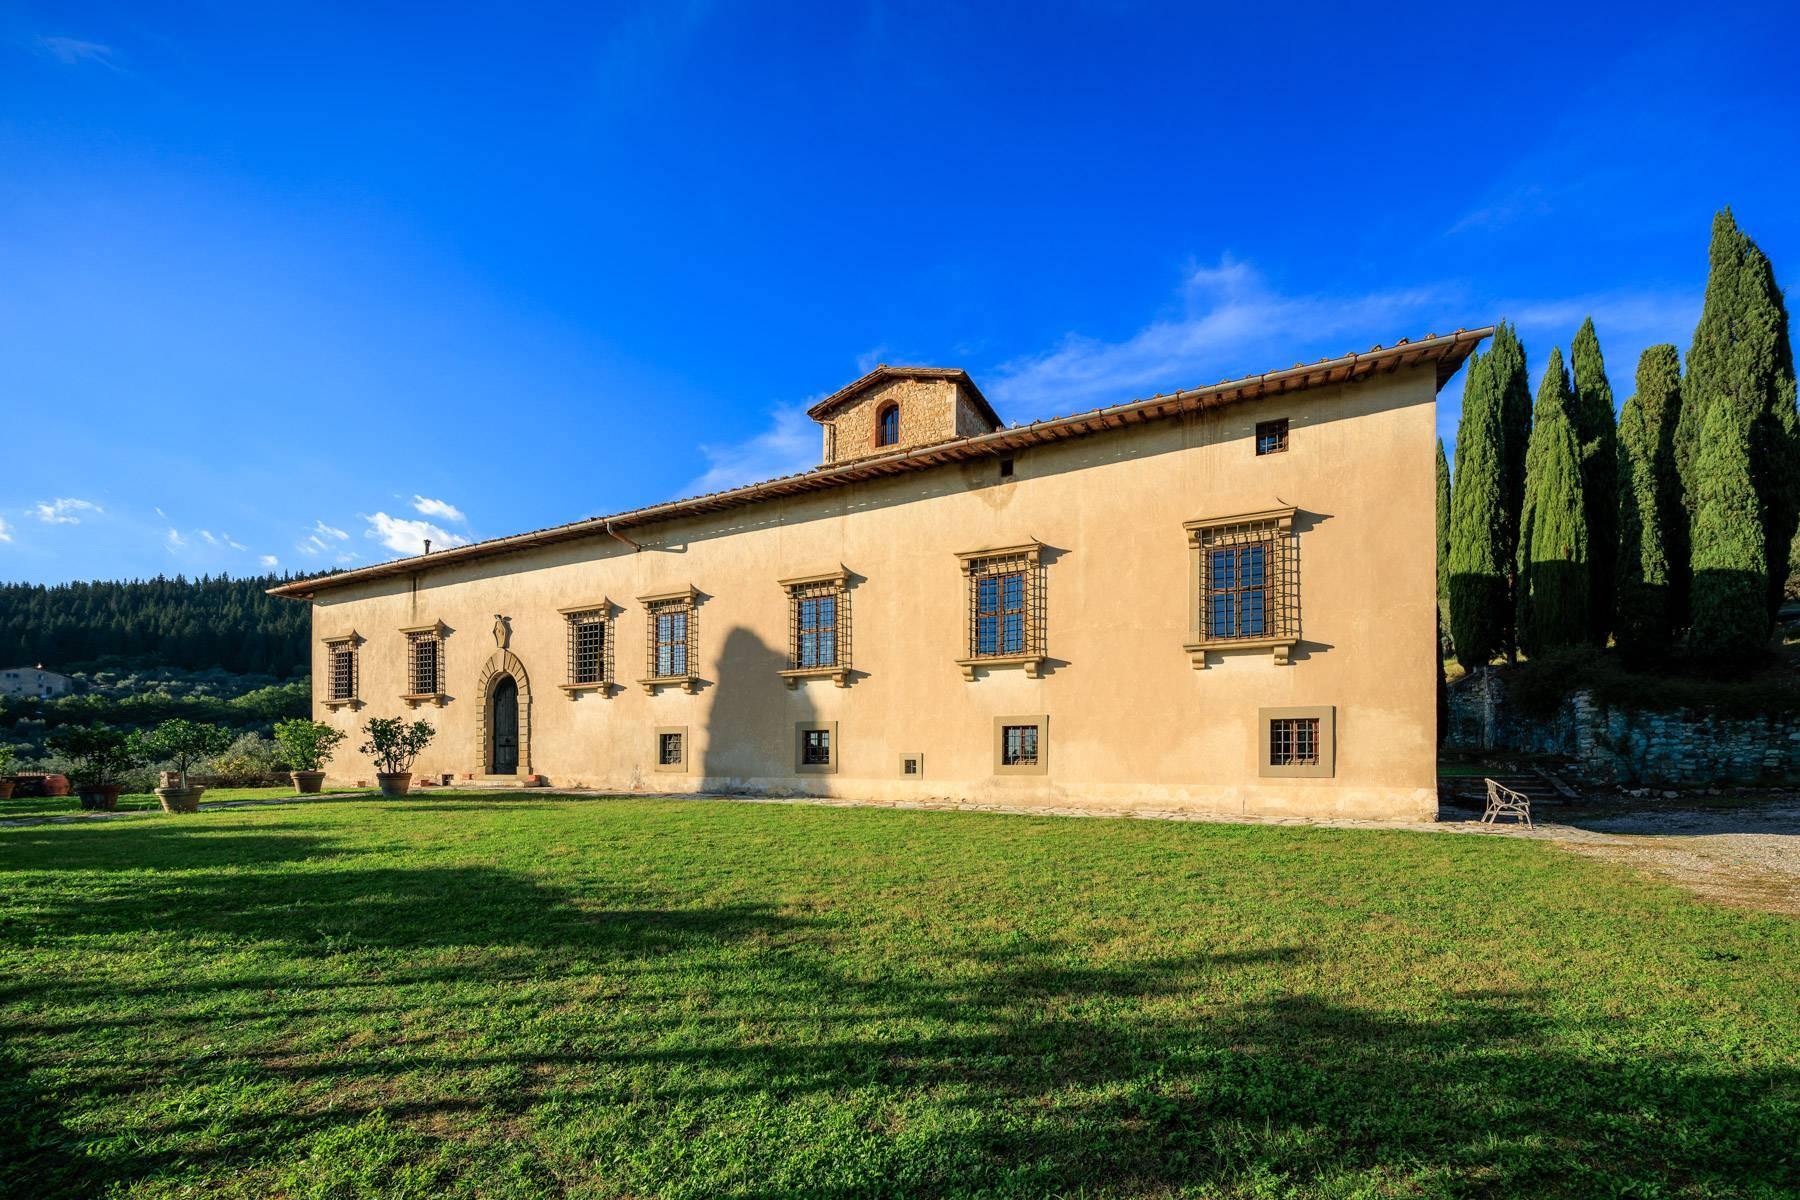 Grande villa padronale d'epoca nella più rinomata zona olearia vicino a Firenze - 2